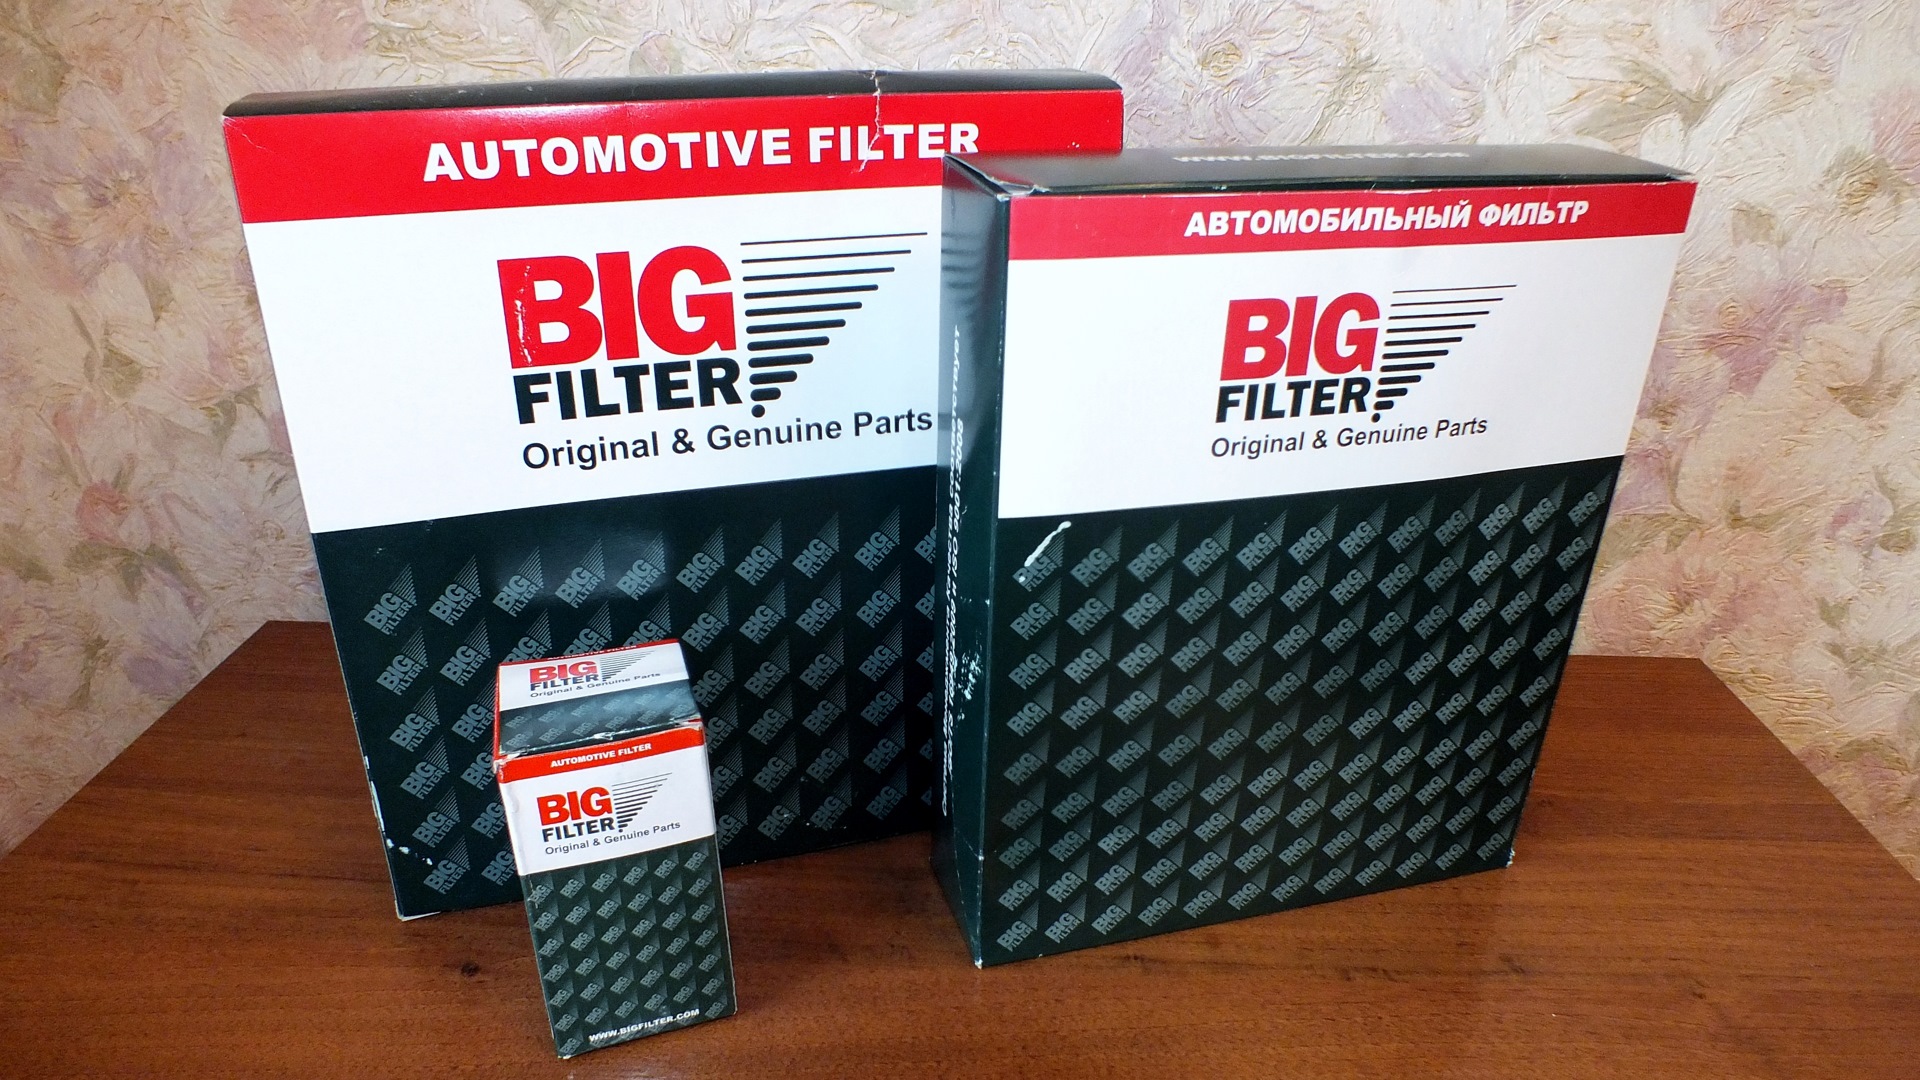 Воздушный фильтр какой фирма. GB-8001 фильтр воздушный big Filter. Фильтр воздушный поло седан Биг фильтр. Фильтр big Filter gb9751. Gb123 Биг фильтр.